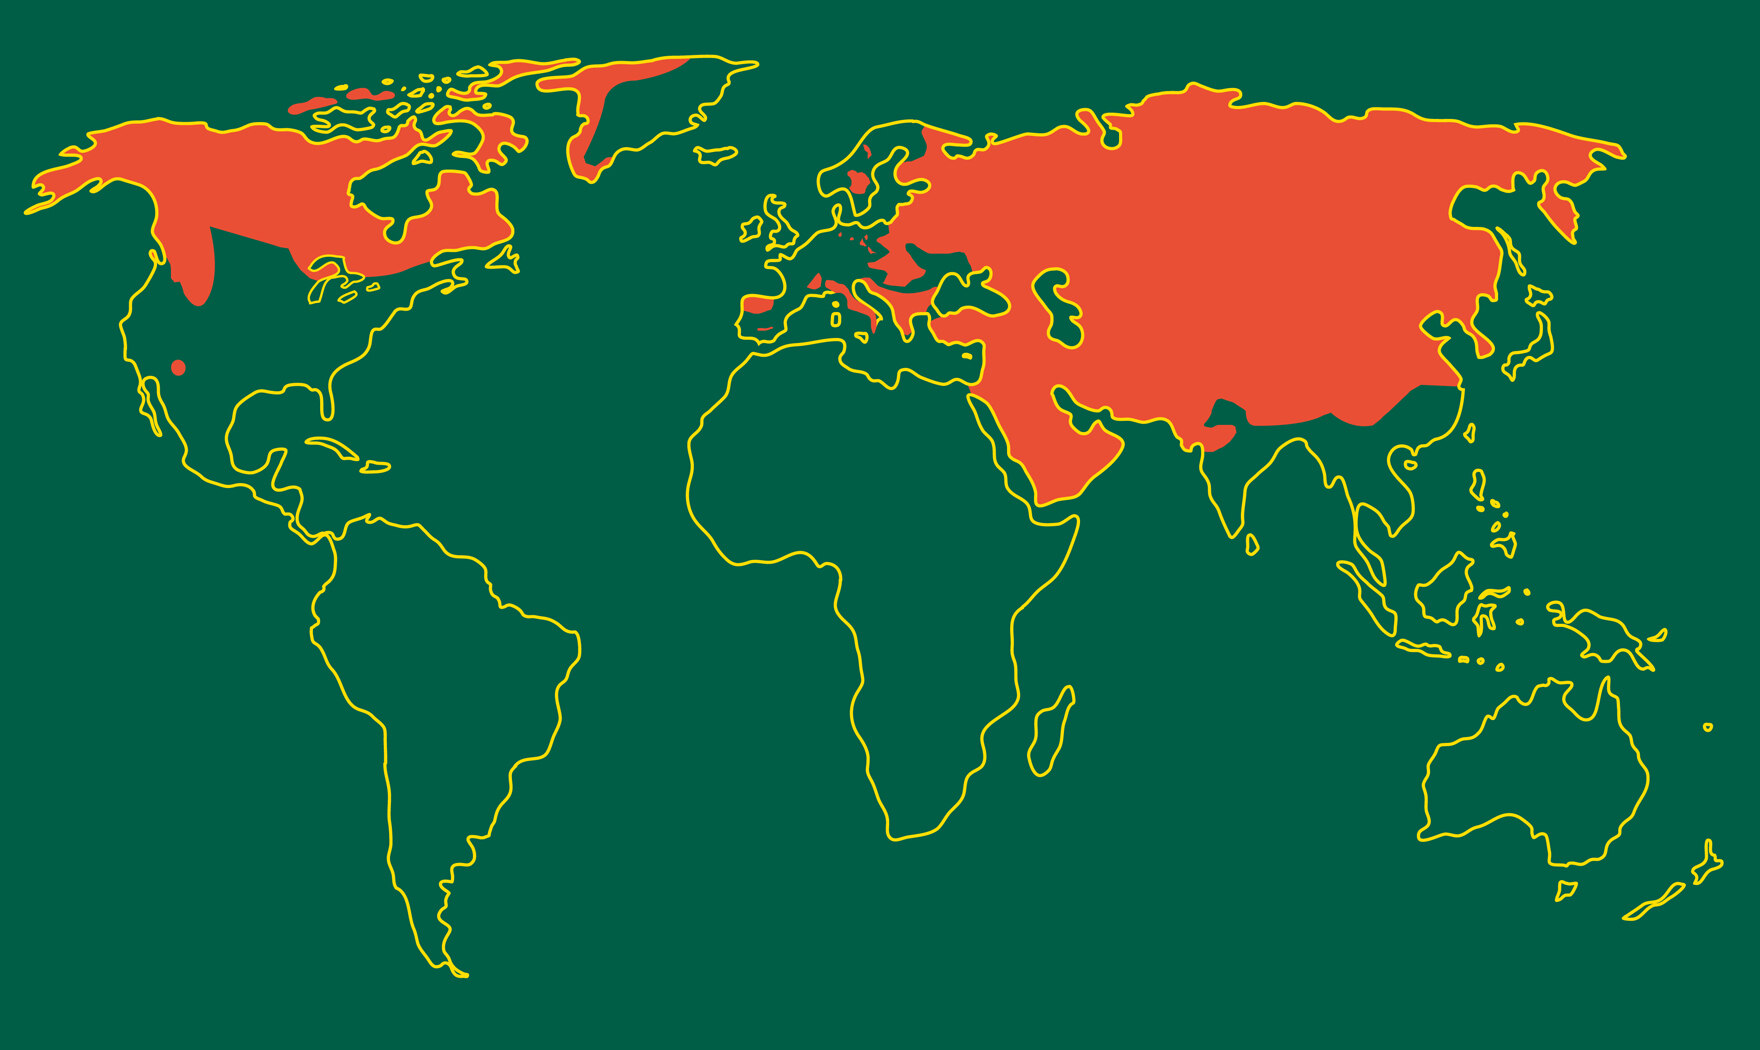 Weltkarte mit farblich gekennzeichnetem Verbreitungsgebiet